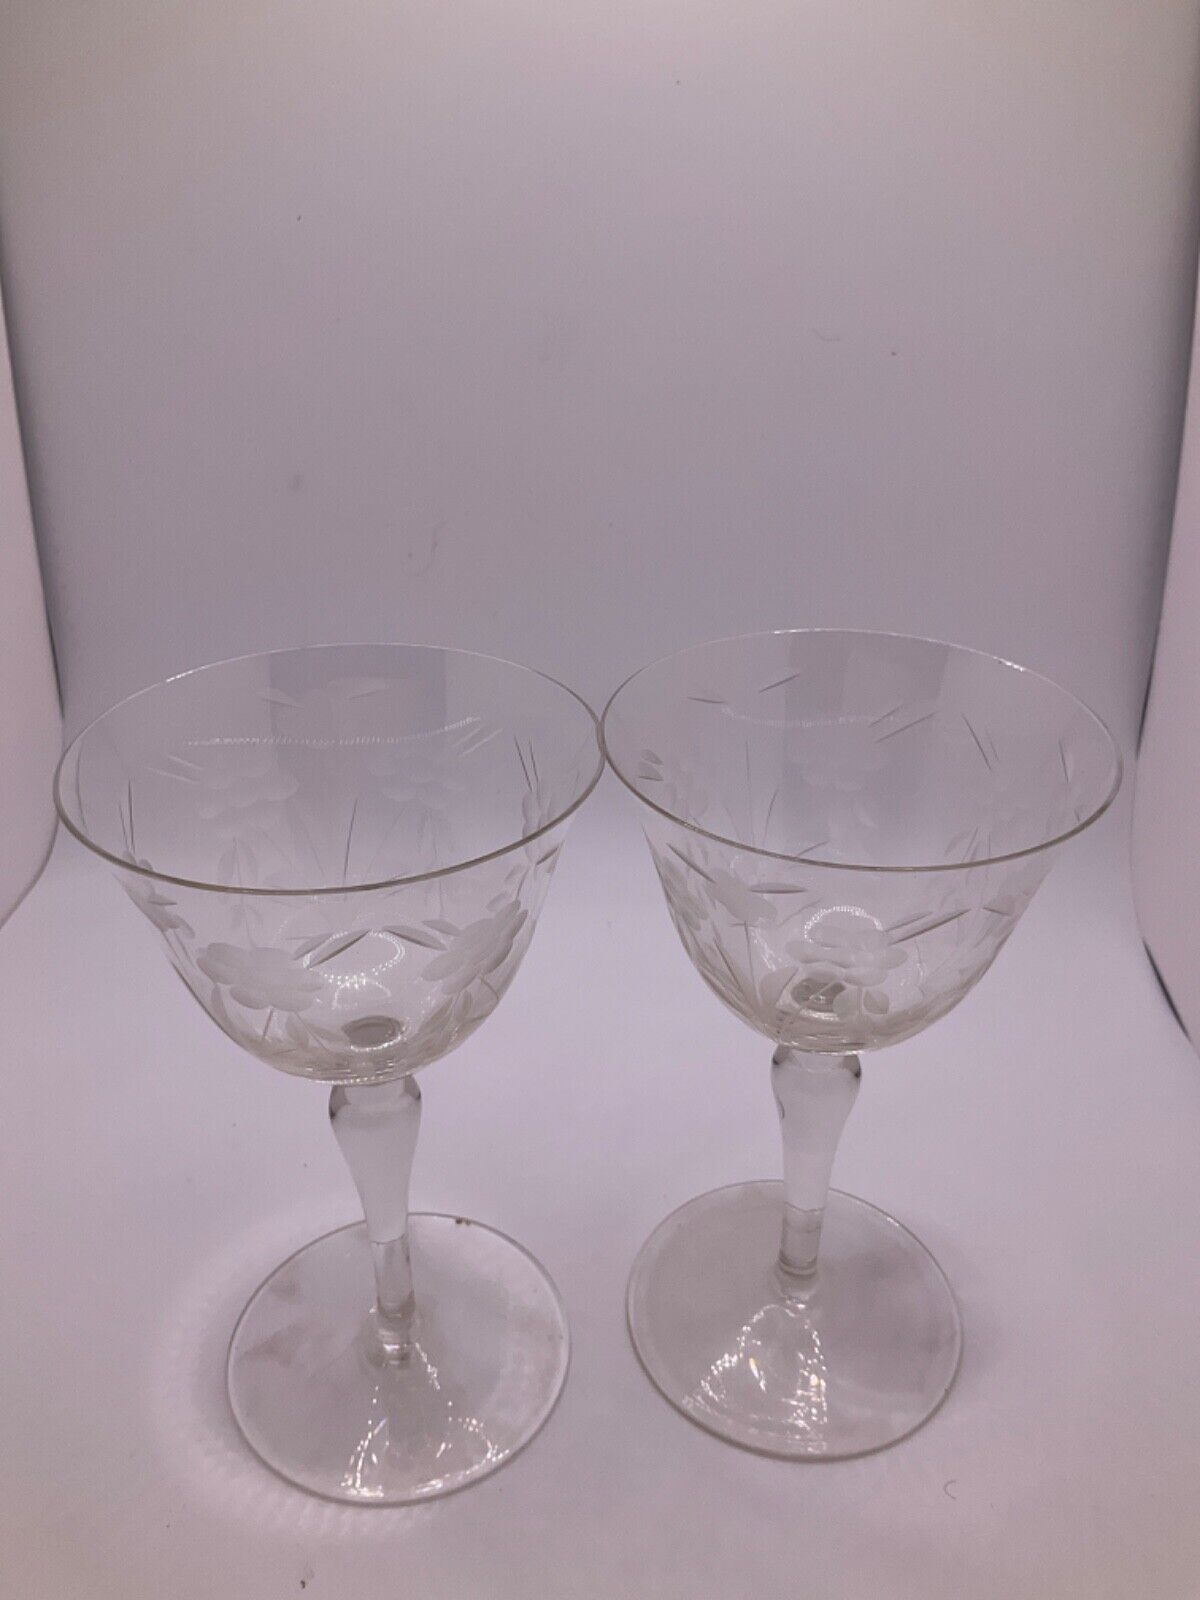 Gorgeous Set of 2 Etched Floral Crystal Wine Glasses - Elegant Stemware